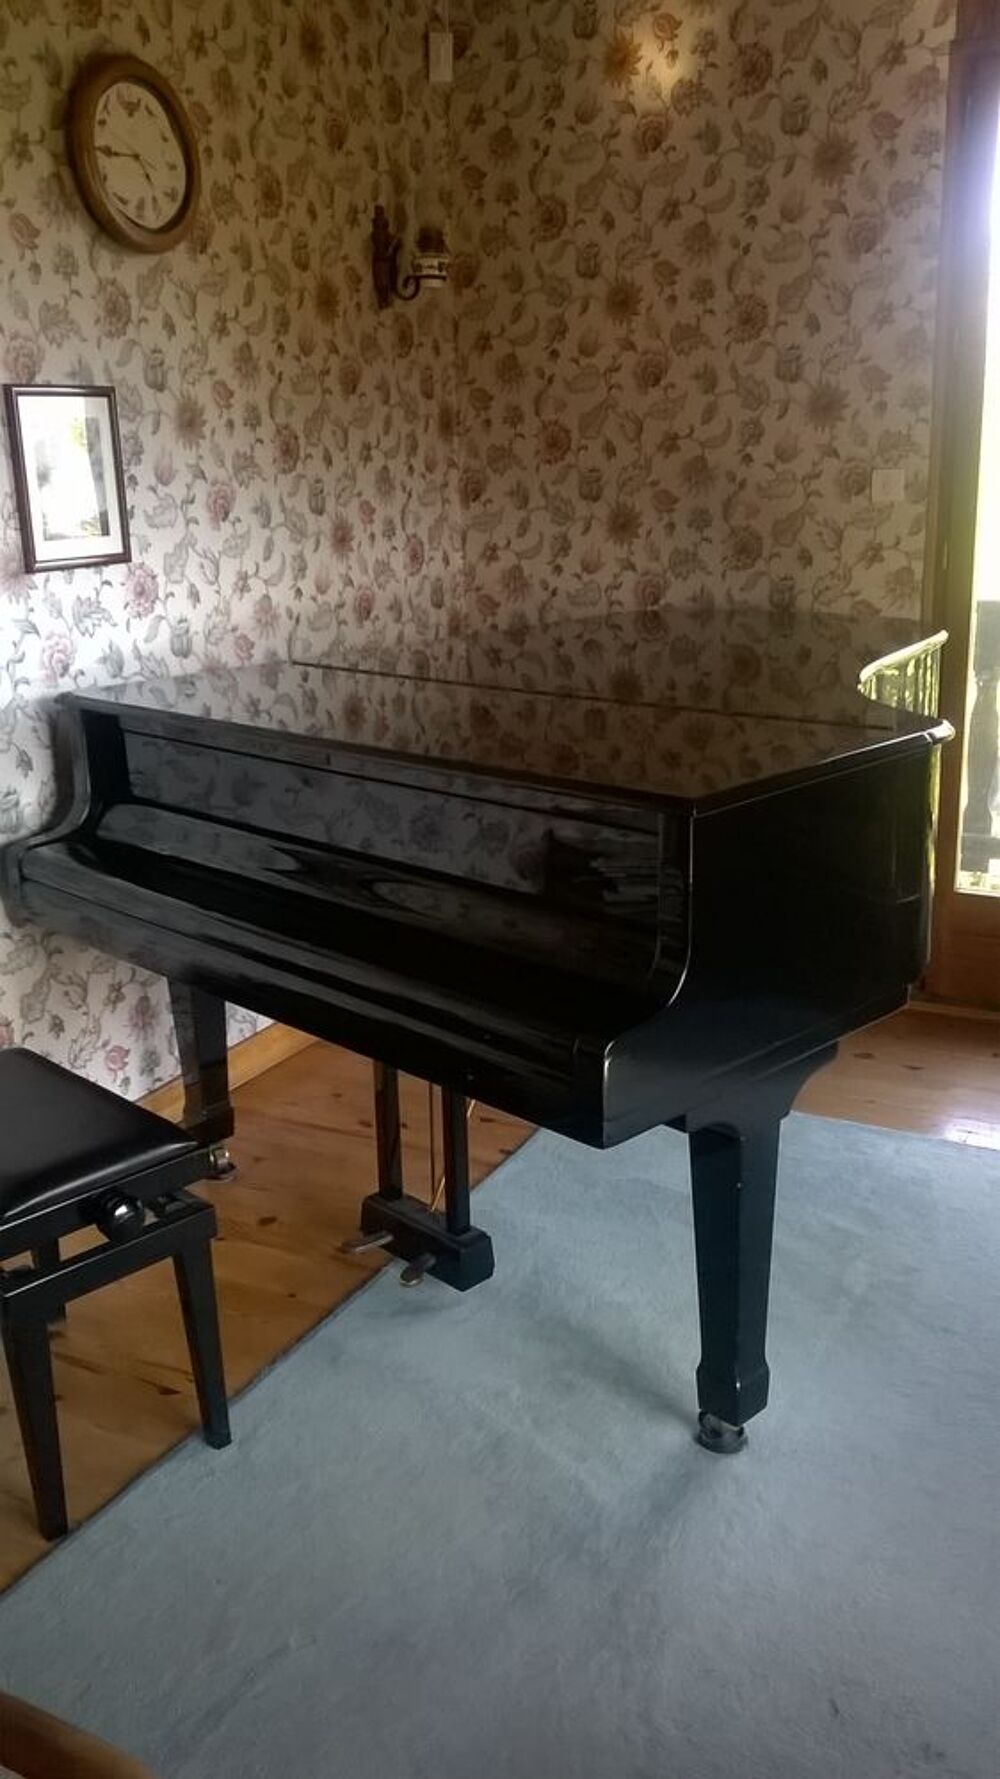  piano quart de queue BL&Uuml;THNER Mod 6 taille 190 cm Instruments de musique